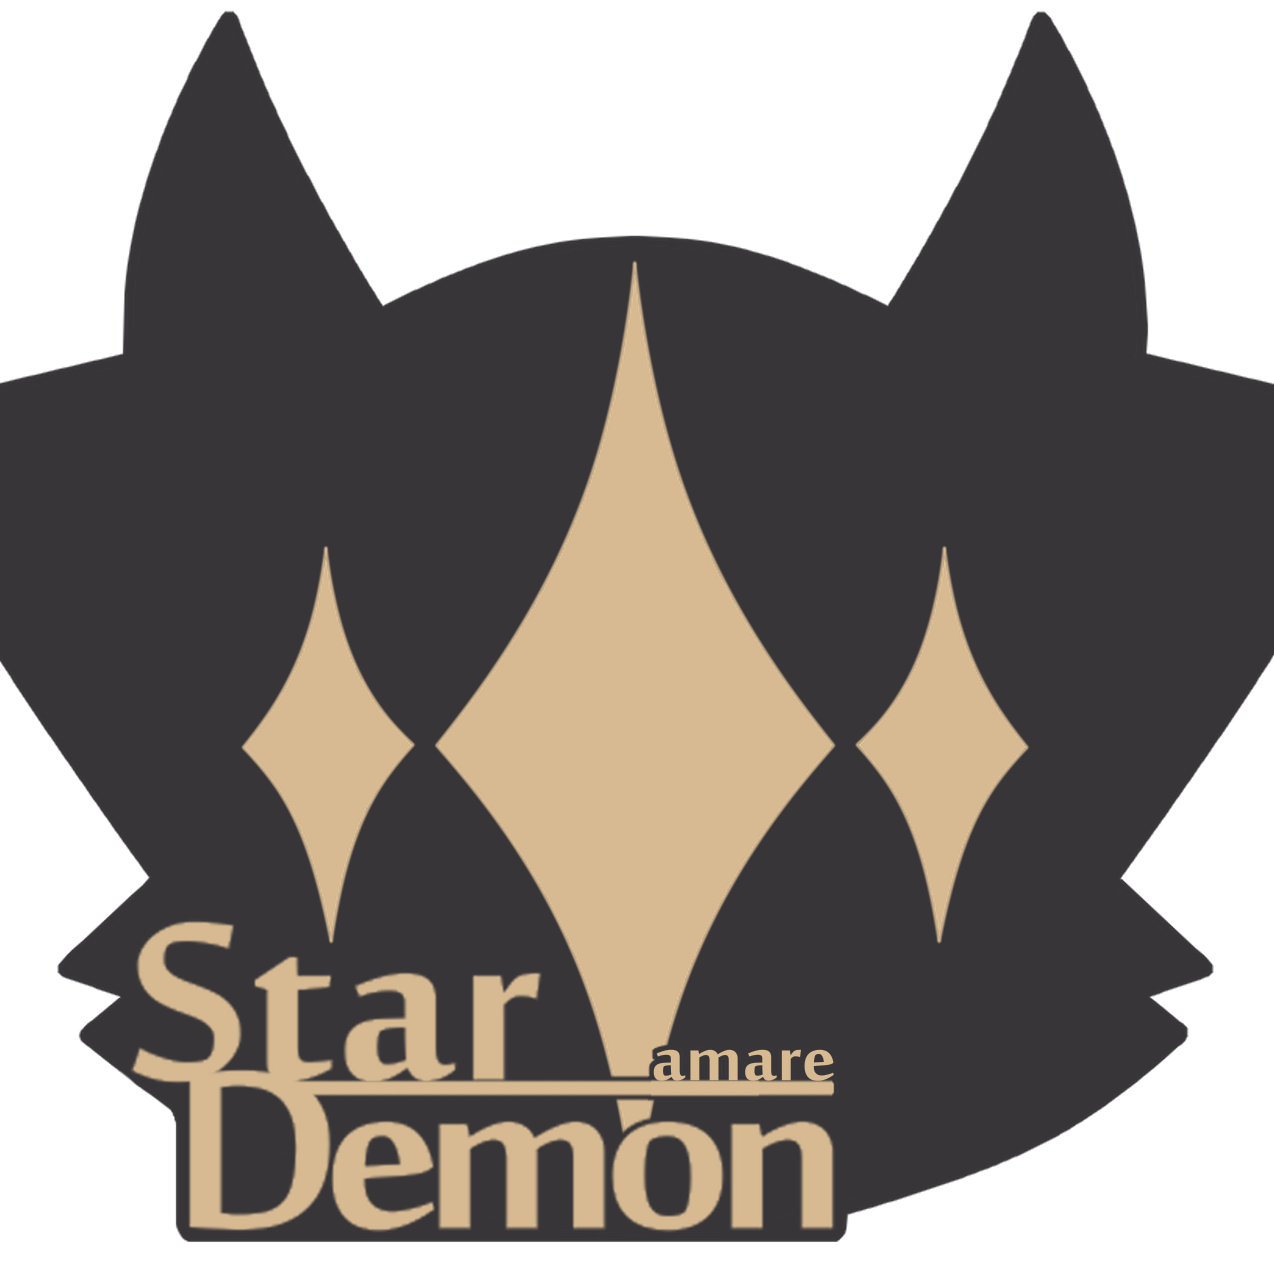 Star amare Demon